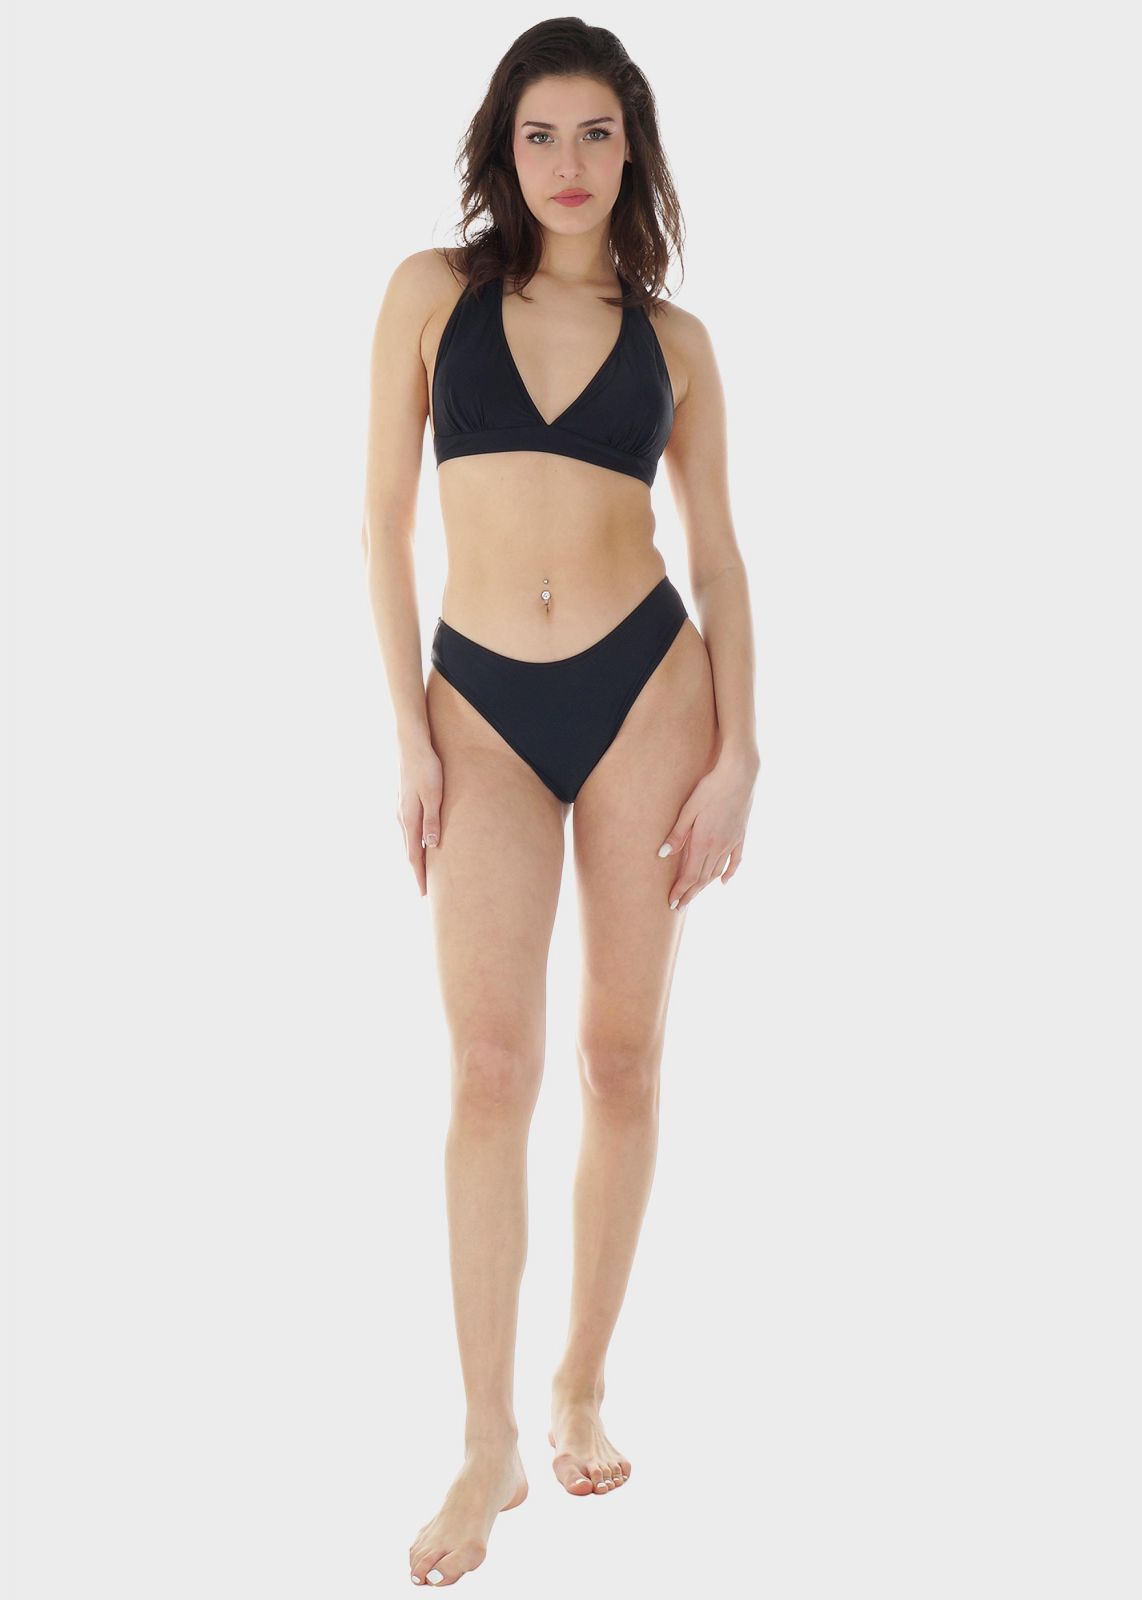 Γυναικείο σετ μαγιό bikini μονόχρωμο αποσπώμενη επένδυση slip κανονική γραμμή.Καλύπτει B-C CUP ΜΑΥΡΟ